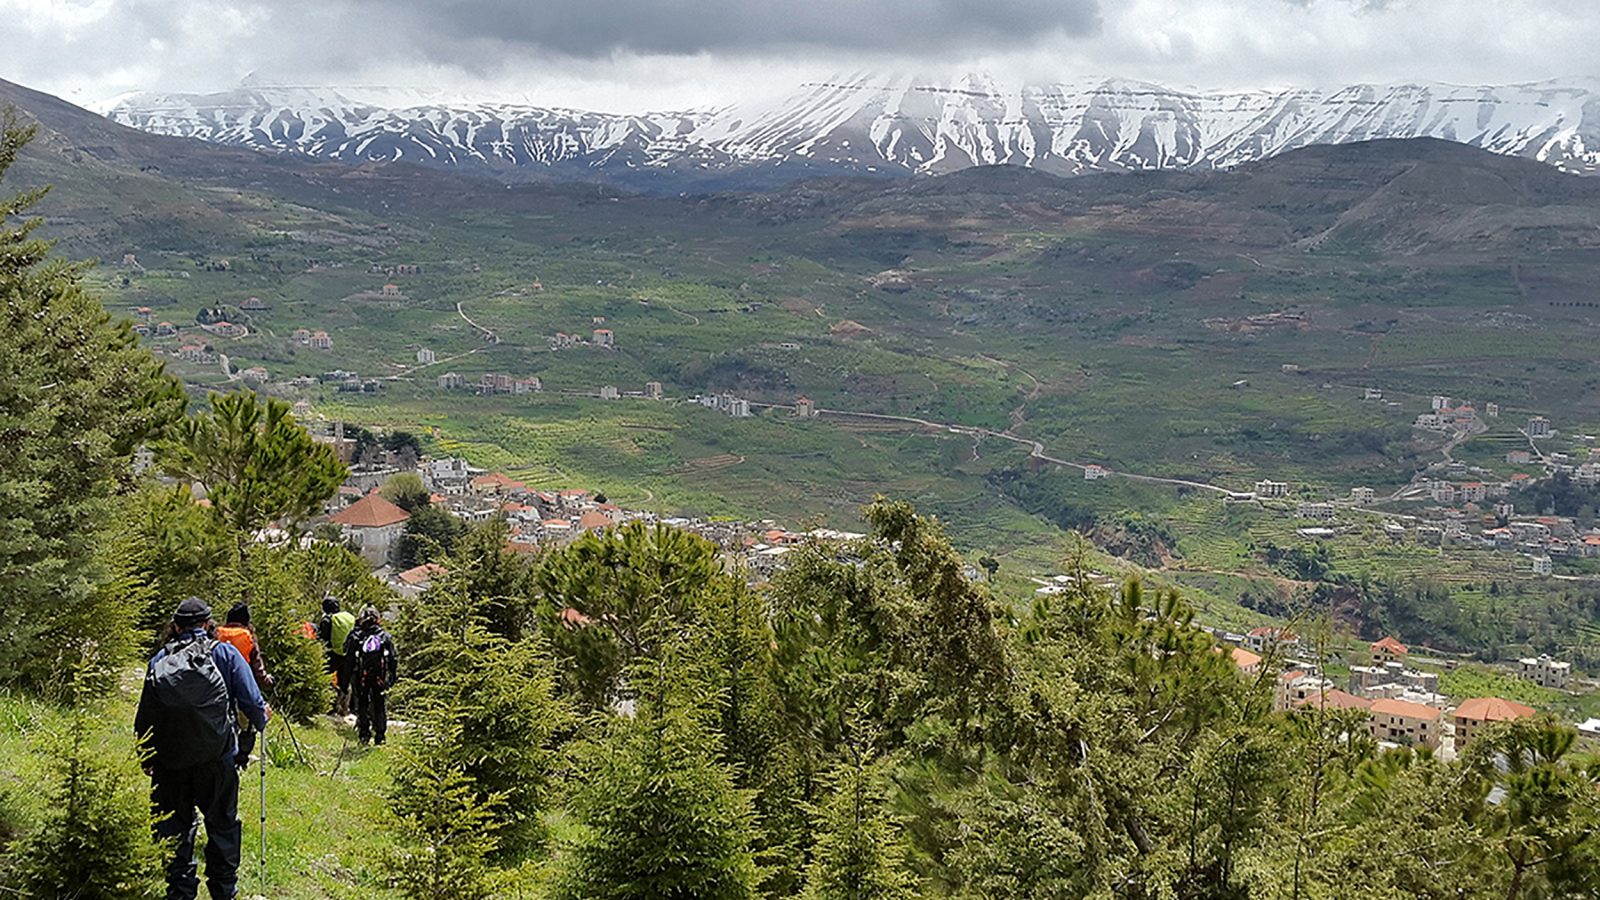 انتفع مشروع درب الجبل اللبناني جزئيًّا بتمويل ودعم من قبل الاتحاد الأوروبي